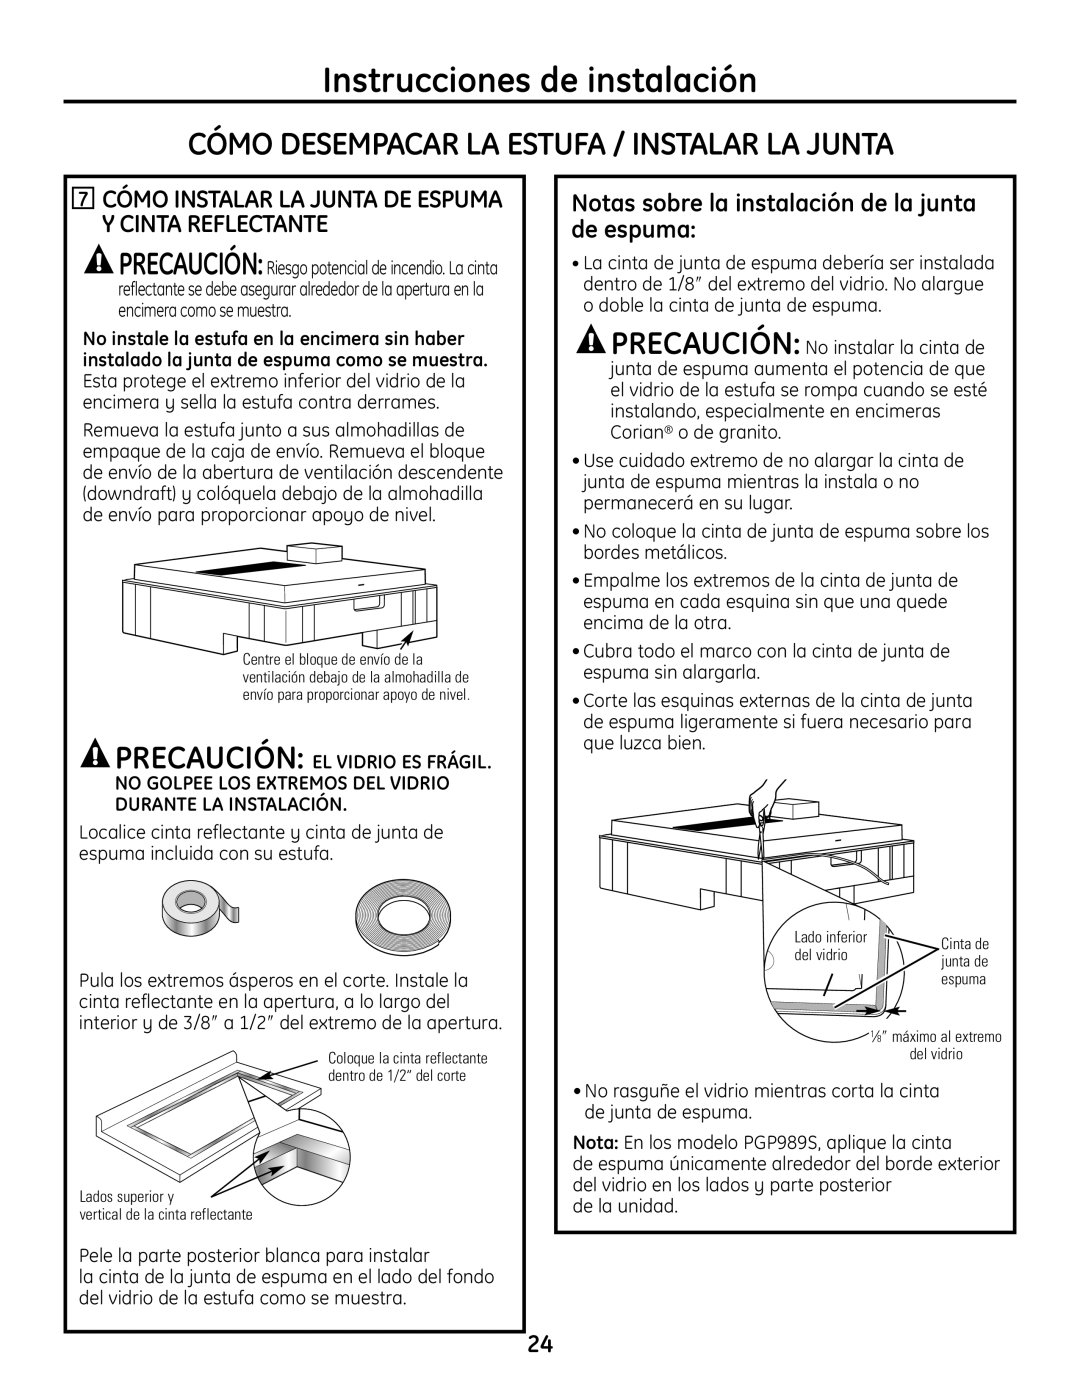 GE PGP989 manual Cómo Desempacar La Estufa / Instalar La Junta, Instrucciones de instalación 